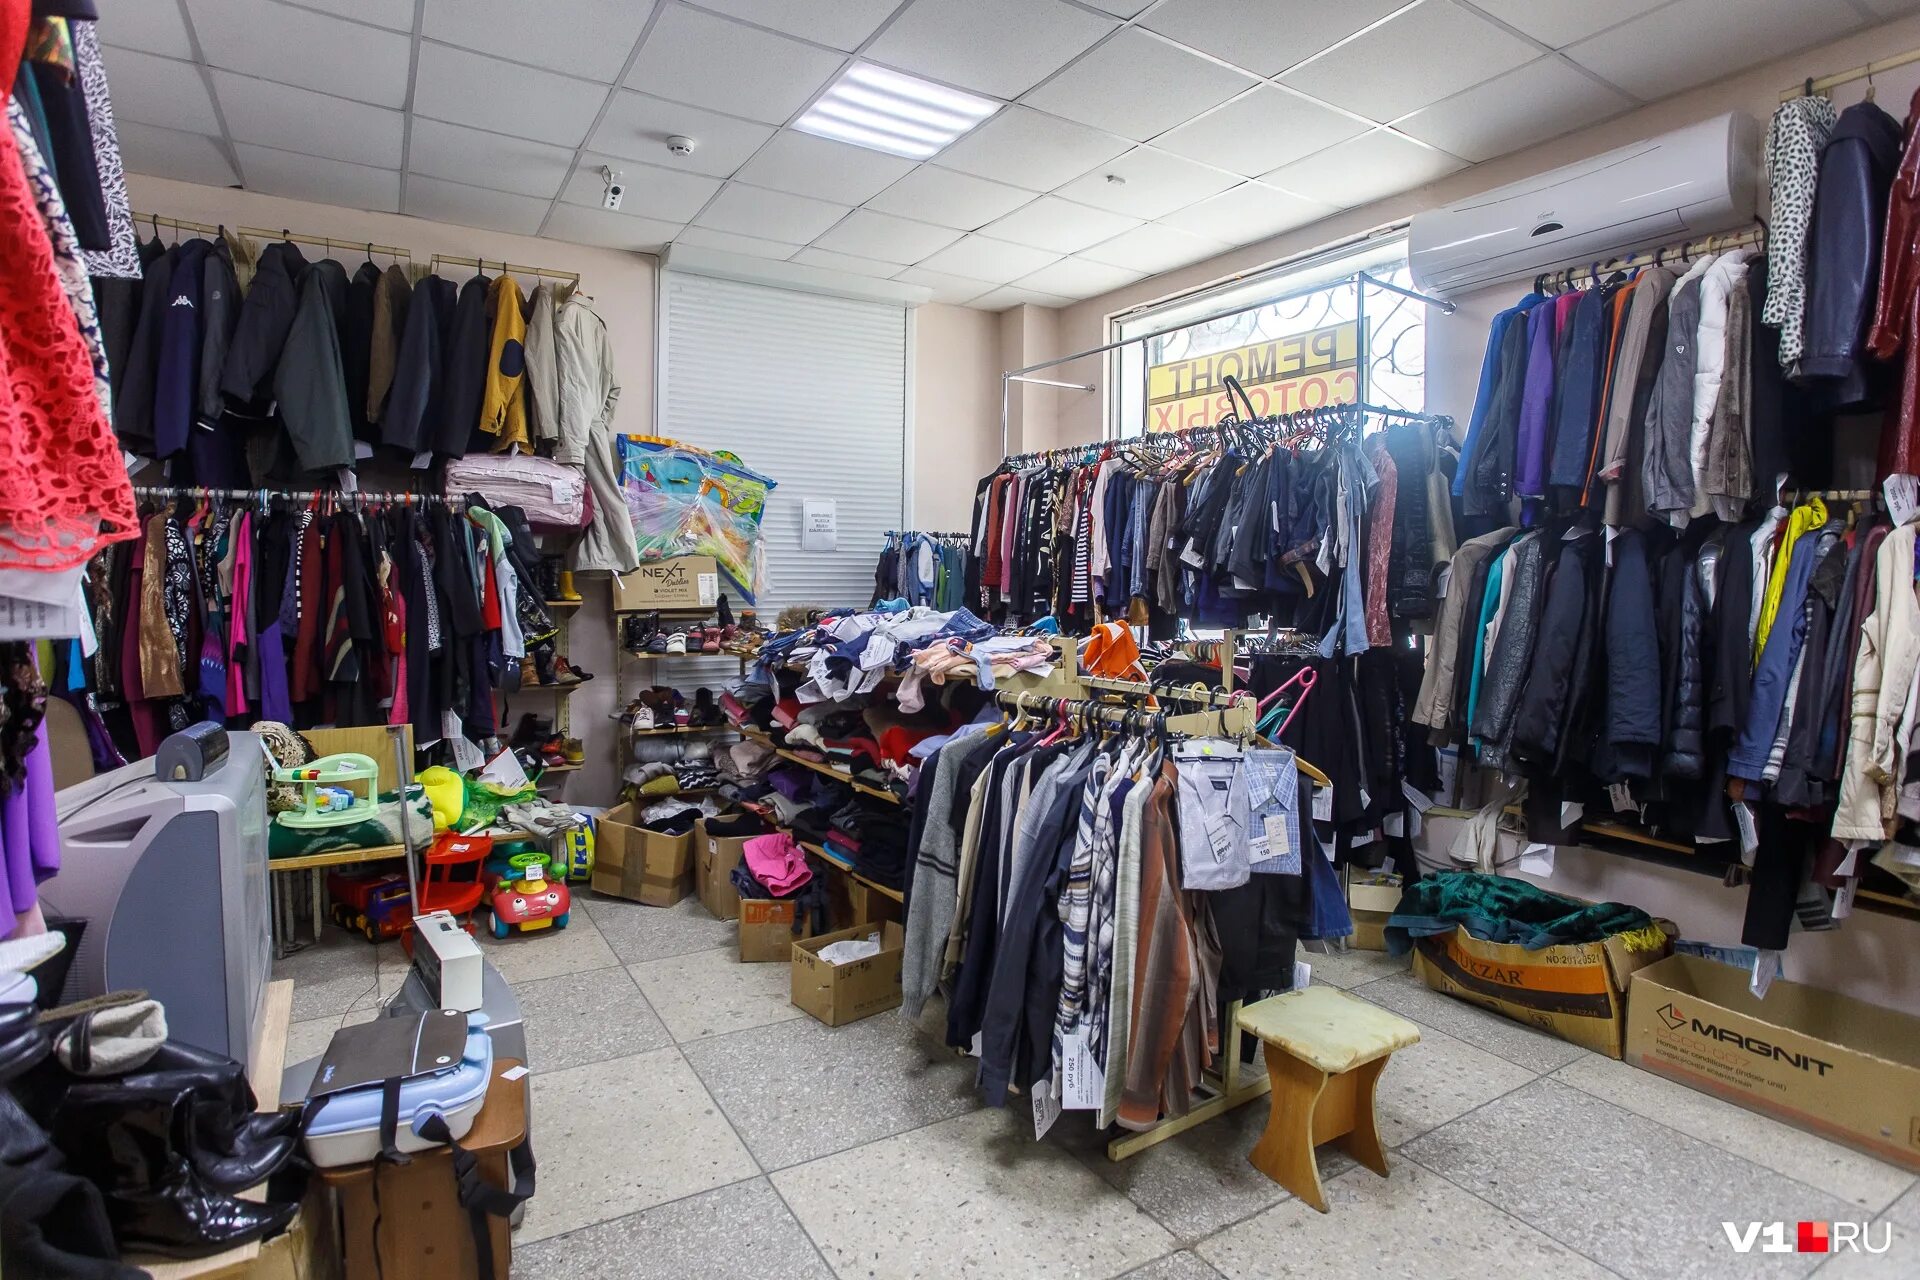 Комиссионные м. Комиссионные магазины в Москве принимающие одежду на продажу.